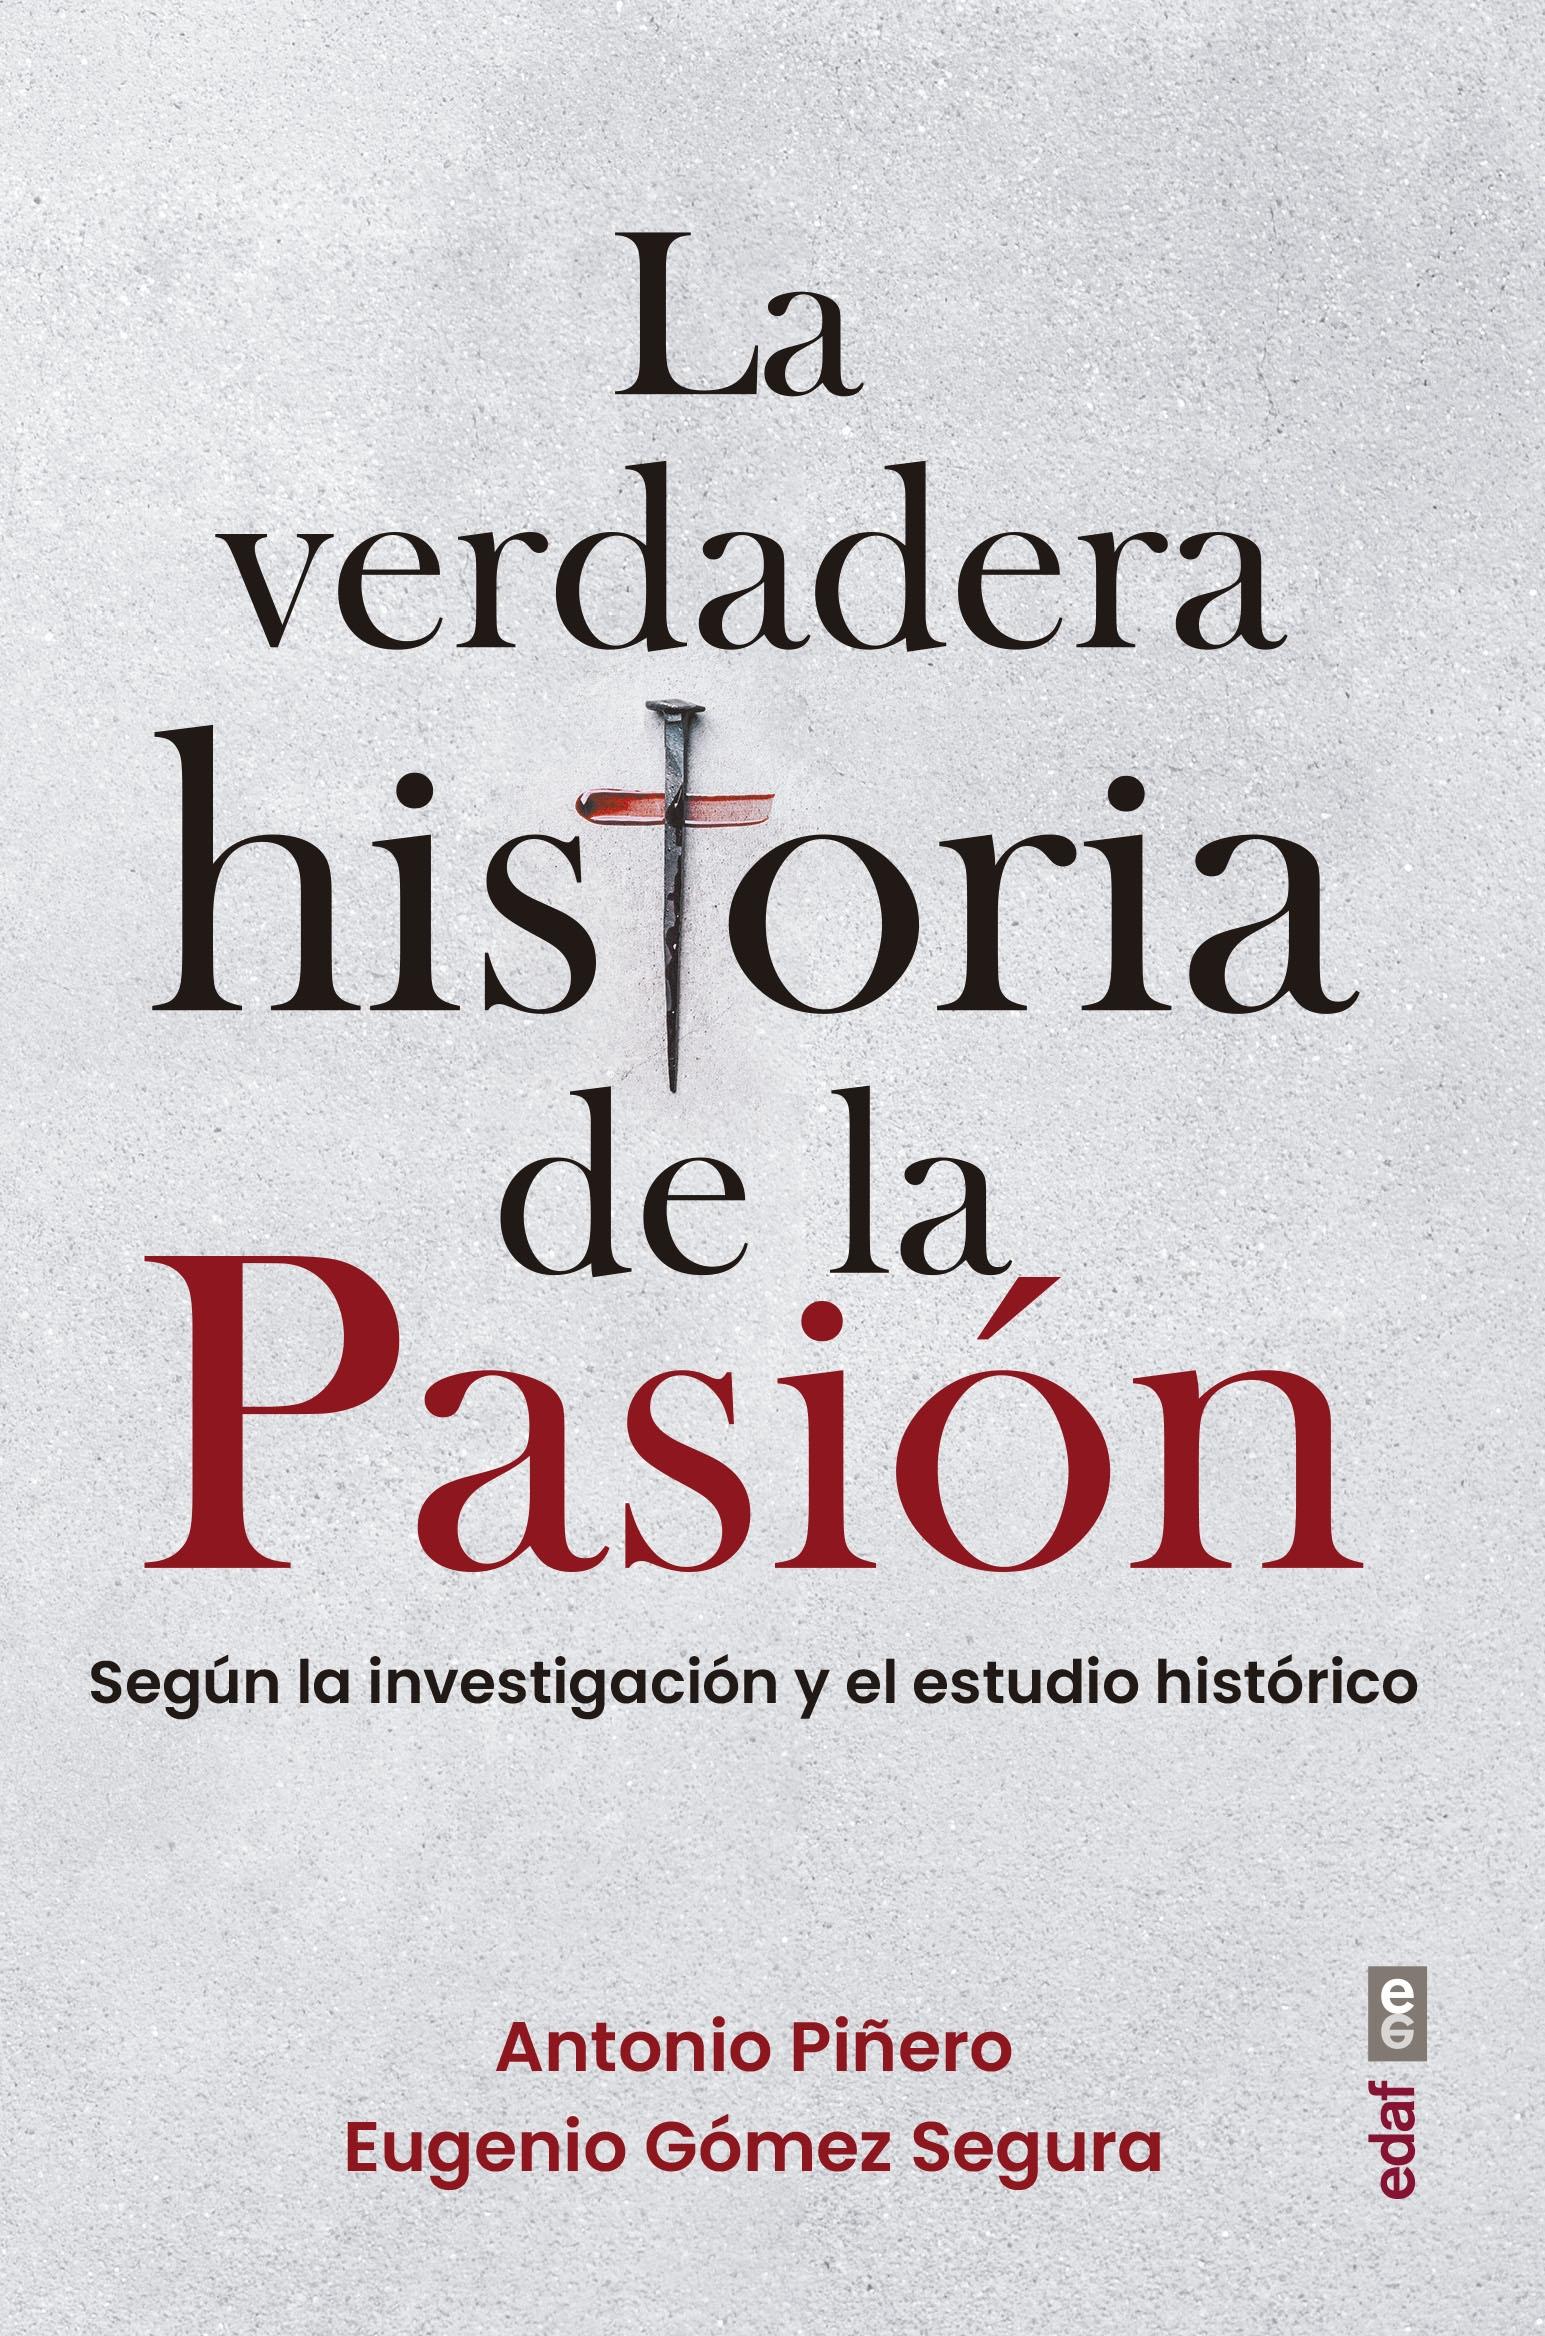 Verdadera historia de la Pasión, La "Según la investigación y el estudio histórico"